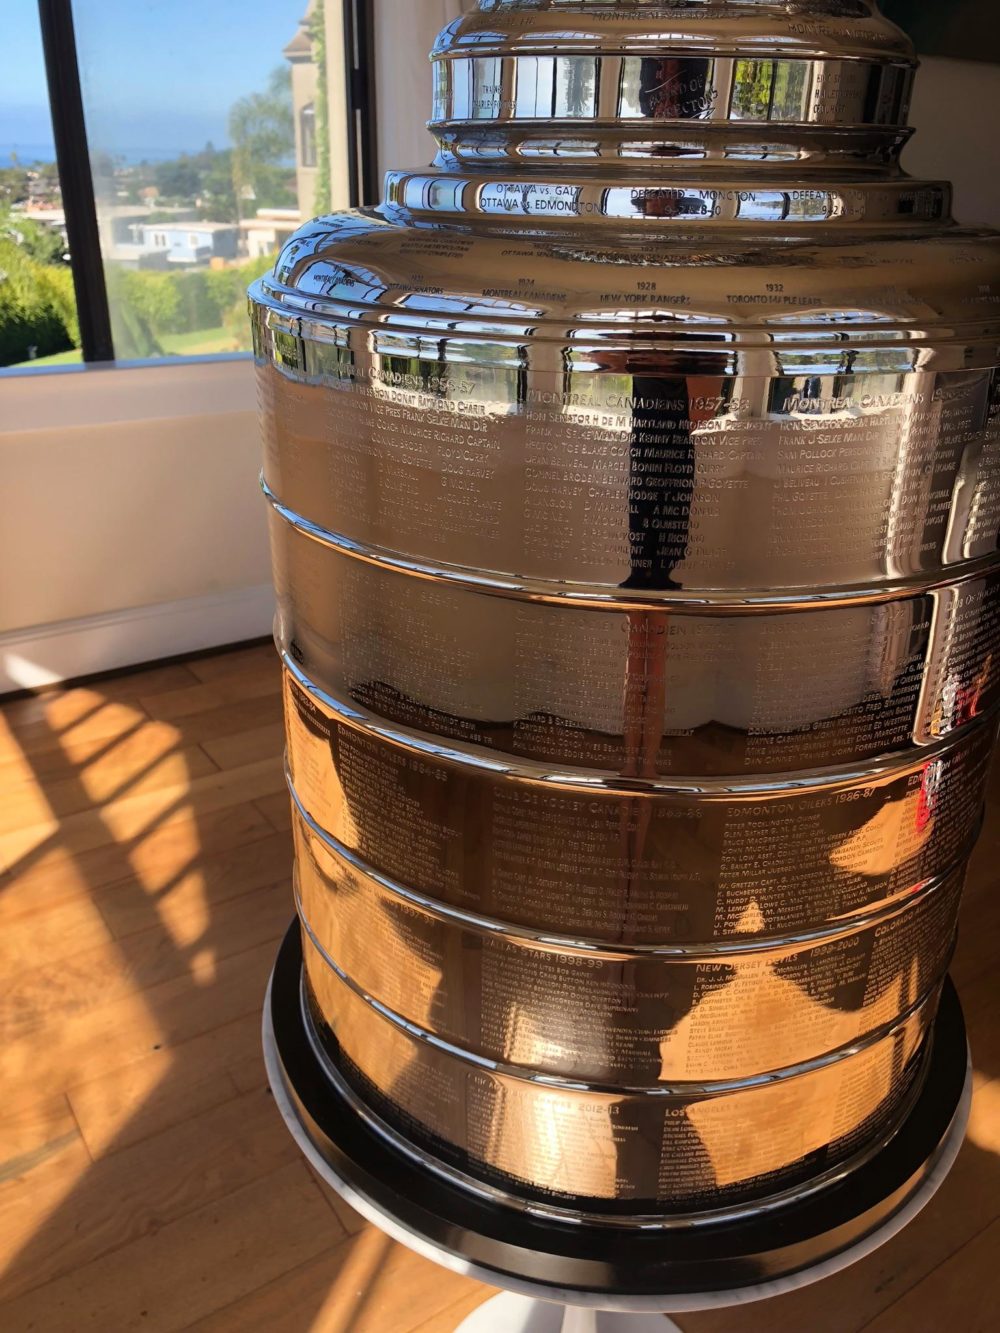 Stanley Cup – TrophyClone